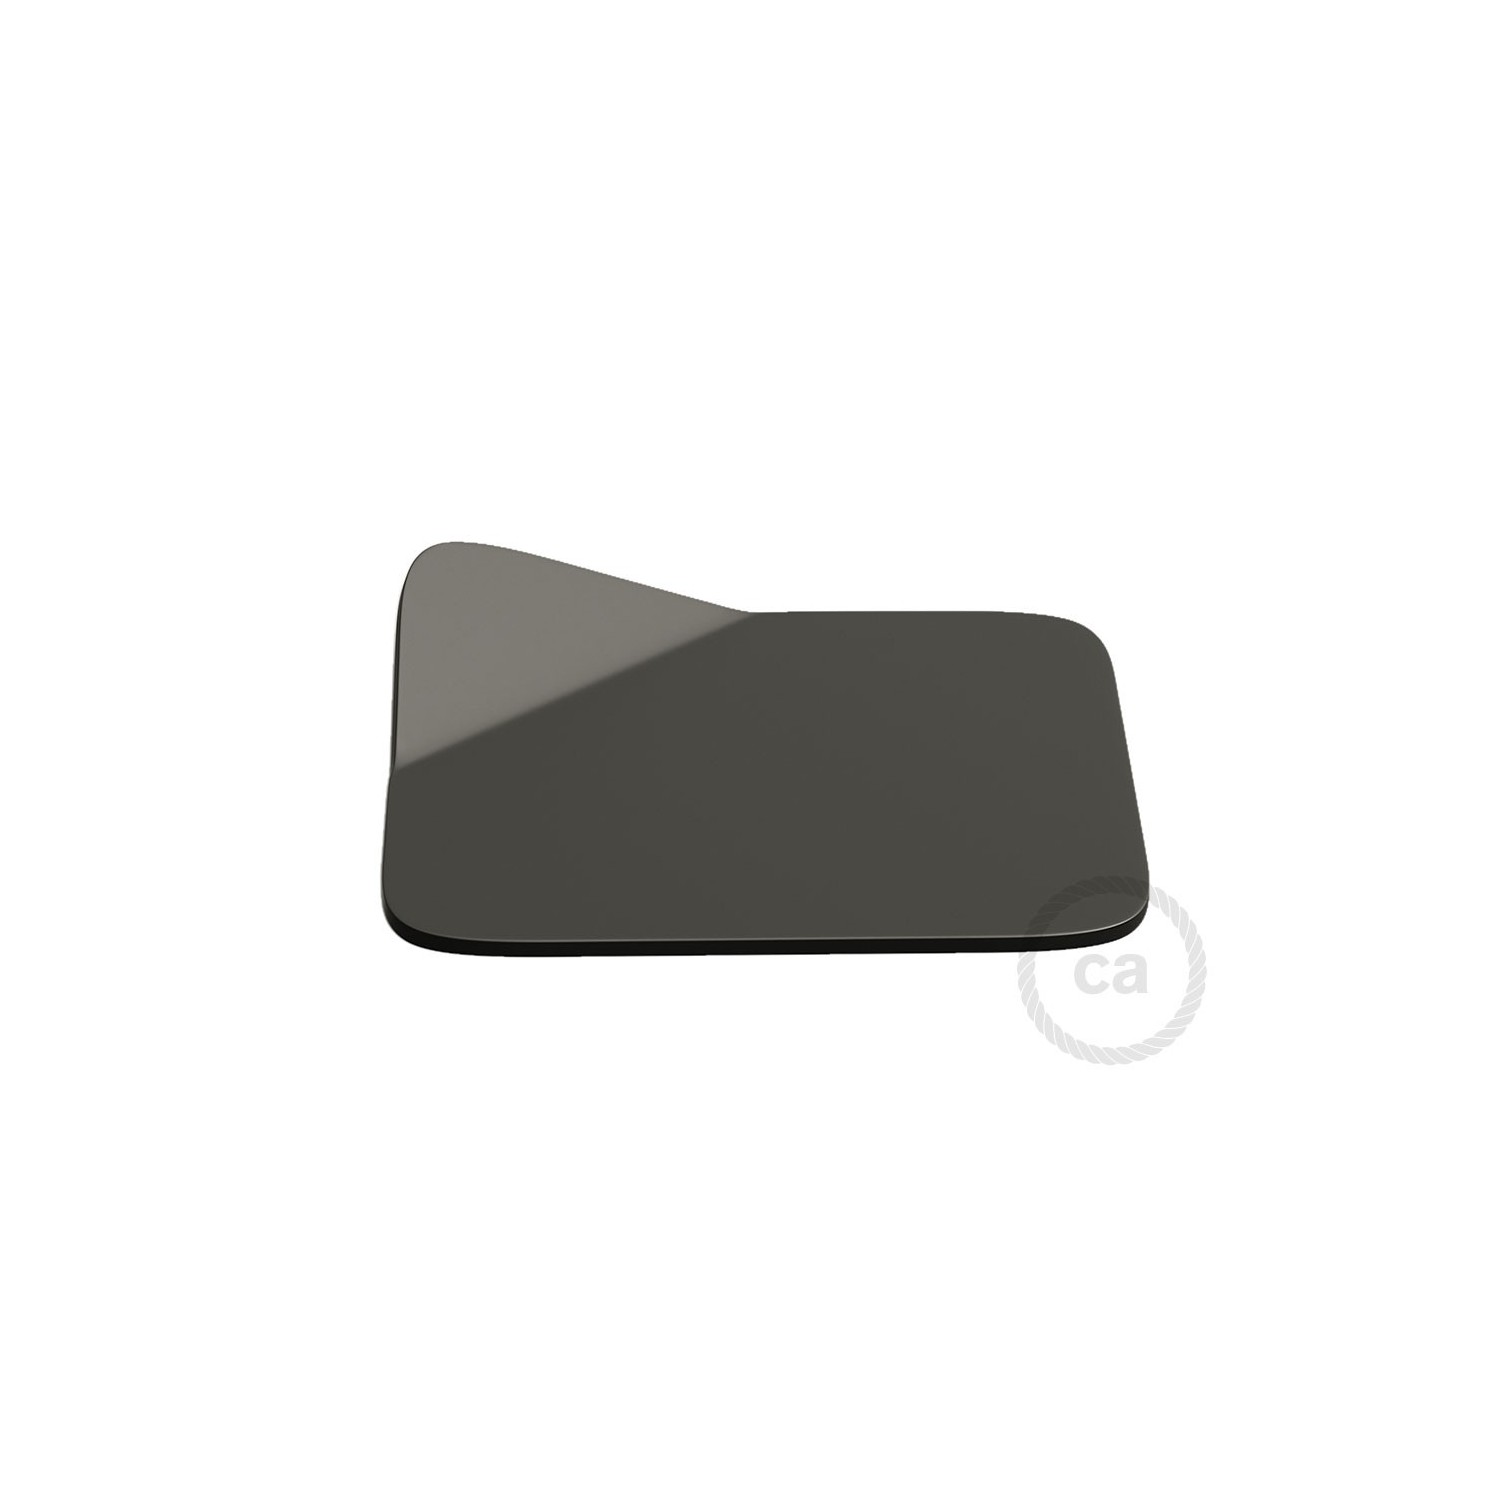 Magnetico®-Base Negra, base metalica superficie plana para Magnetico®-Plug